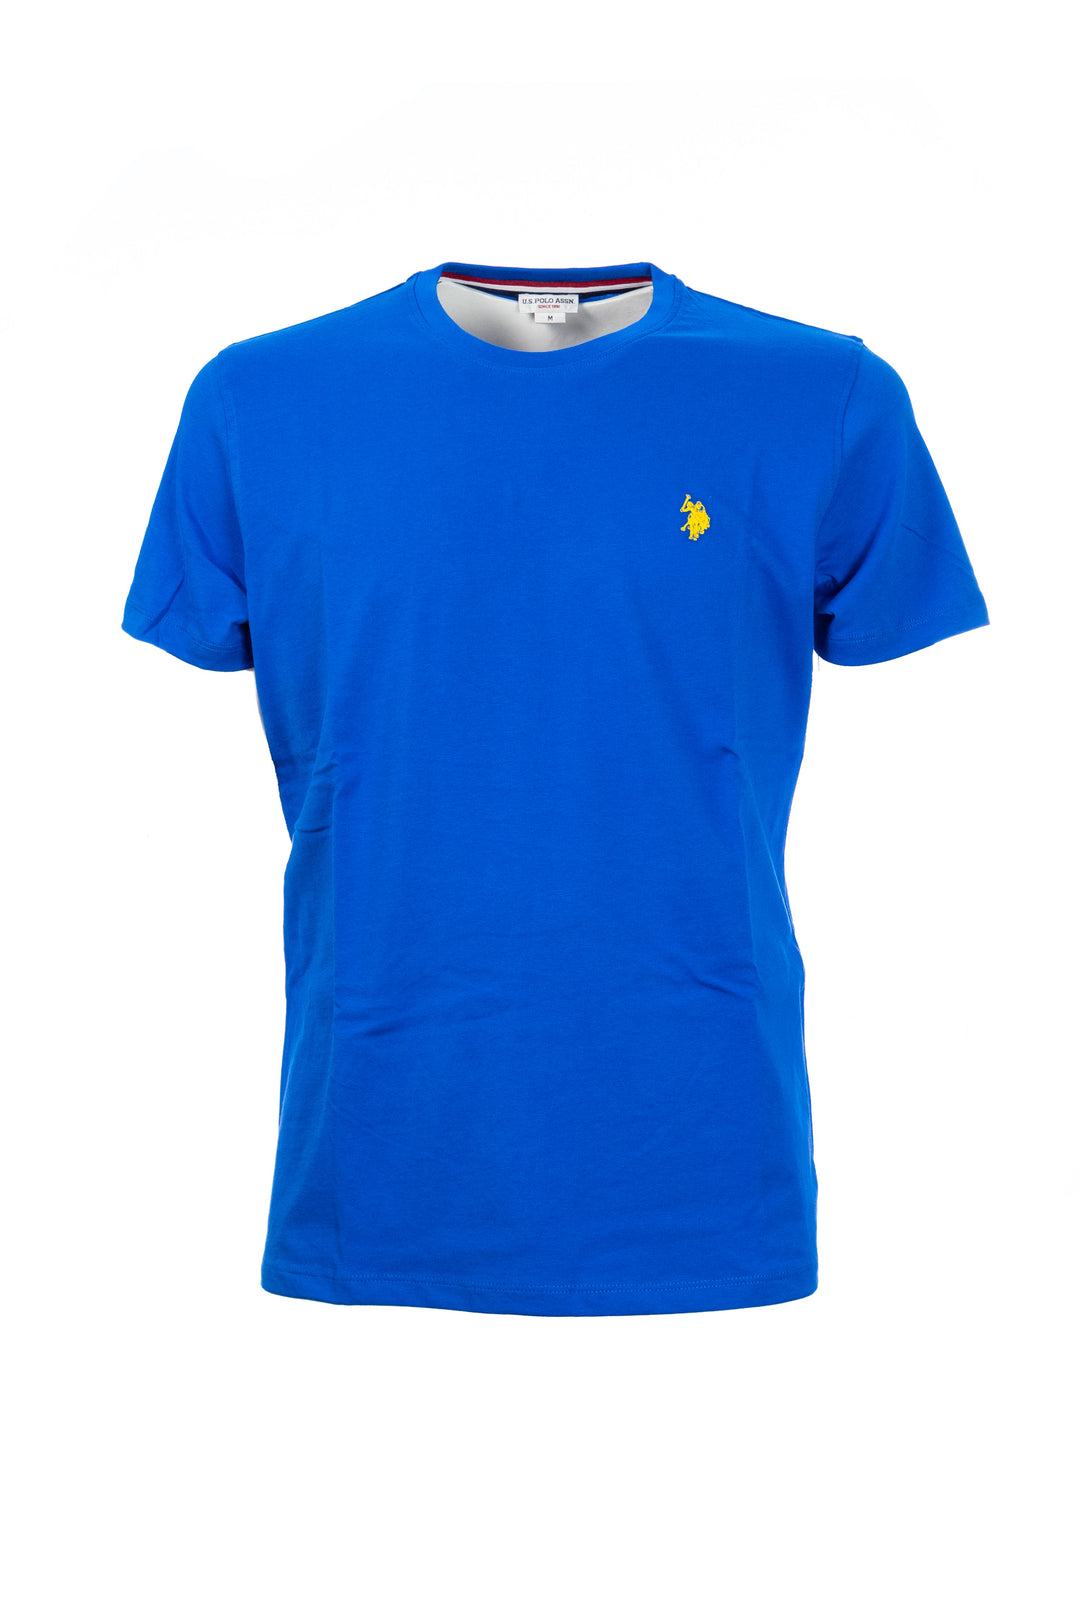 U.S. POLO ASSN. T-shirt blu in cotone con logo ricamato sul petto - Mancinelli 1954